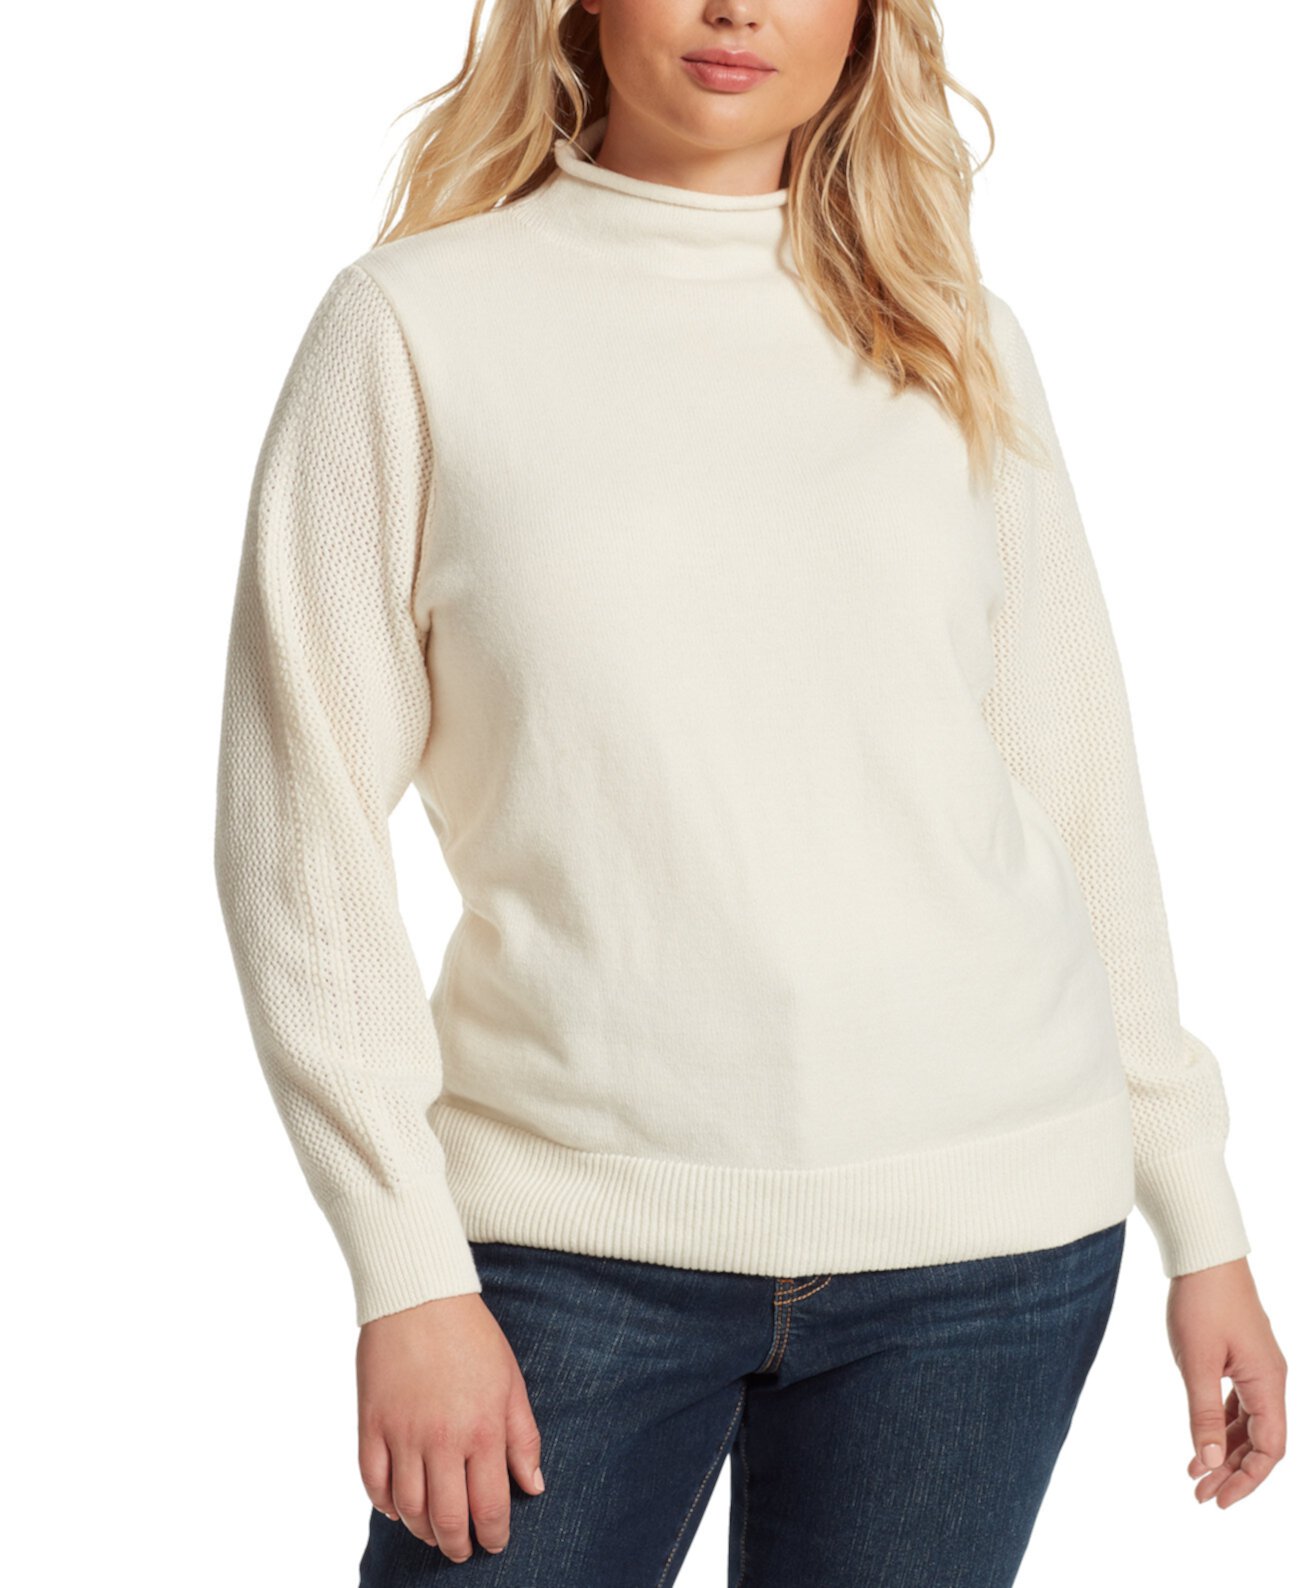 Модный свитер Saskia больших размеров Jessica Simpson